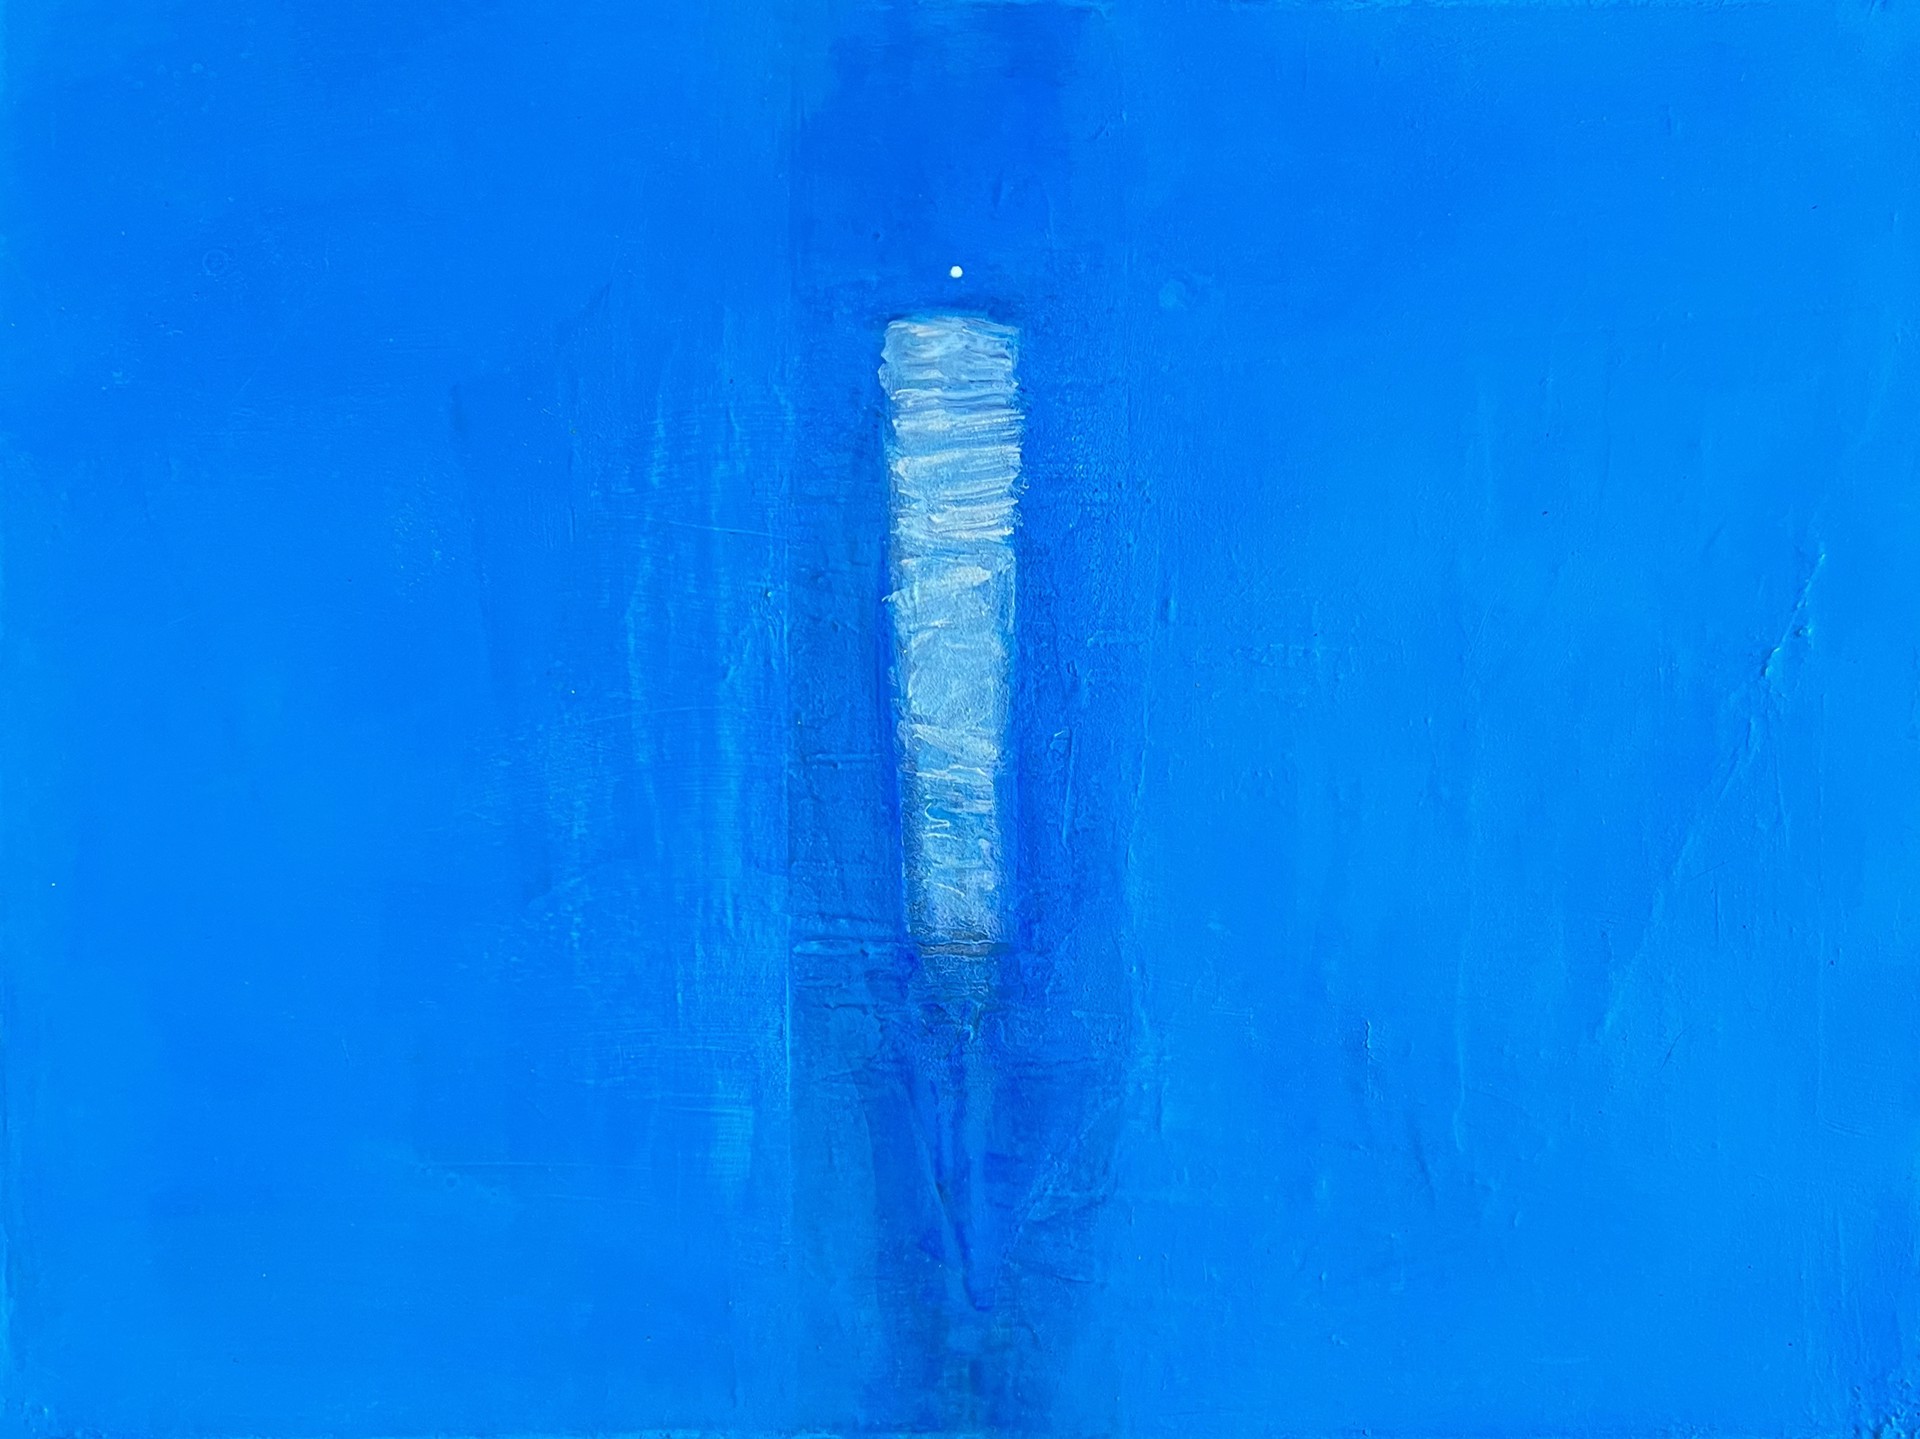 Chrysalis In Blue by Edward Pramuk